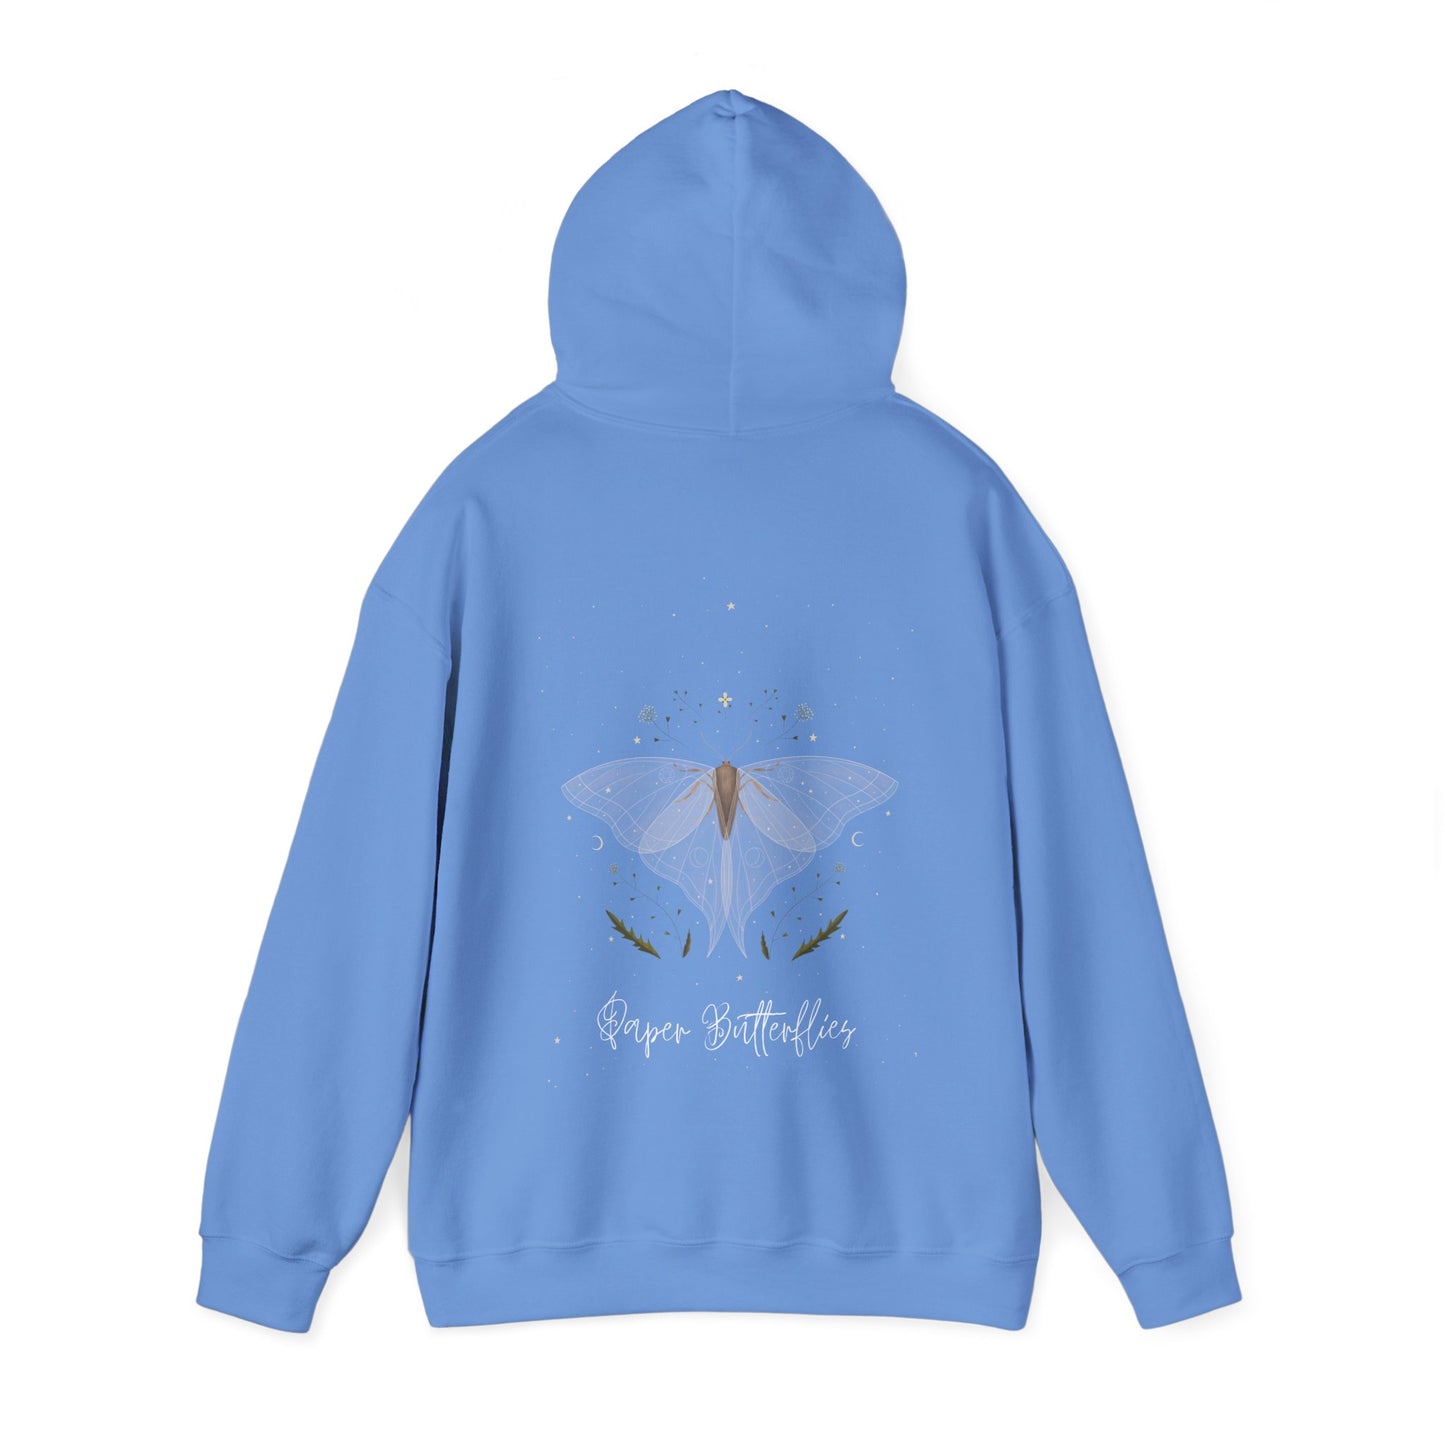 Paper Butterflies Fancy Unisex Heavy Blend Hooded Sweatshirt